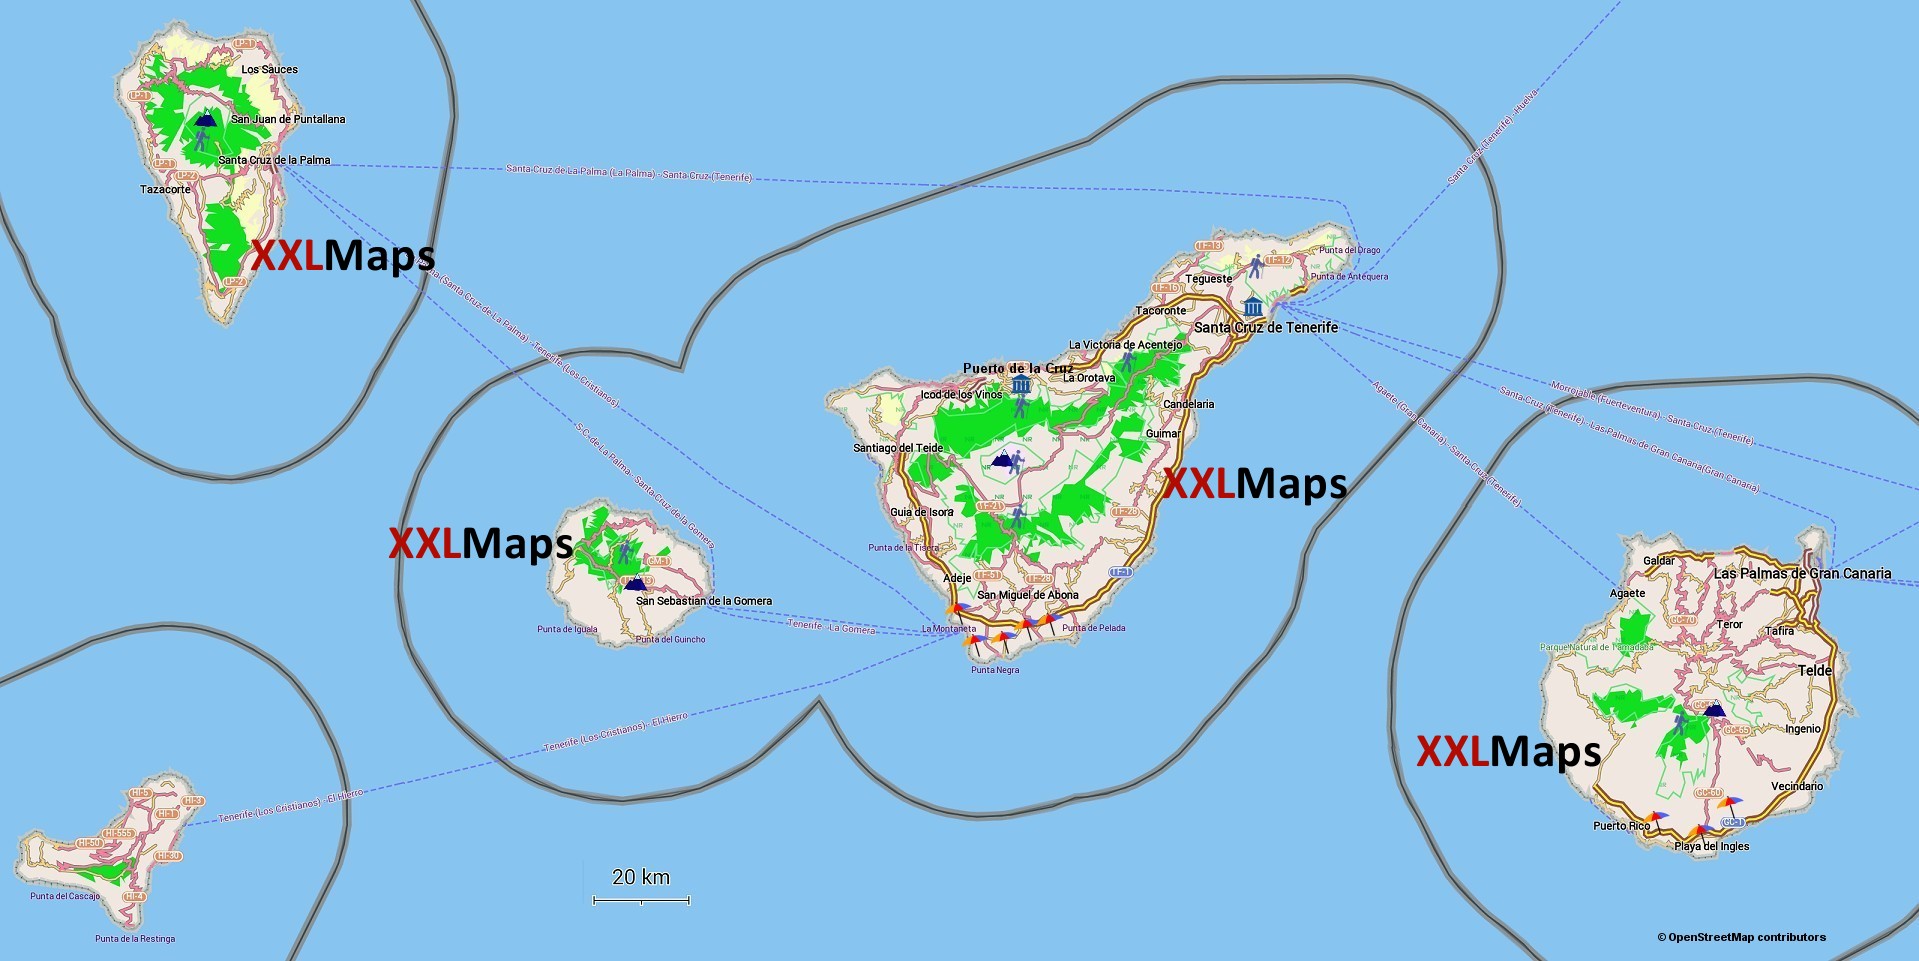 Mapa físico de Islas Canarias